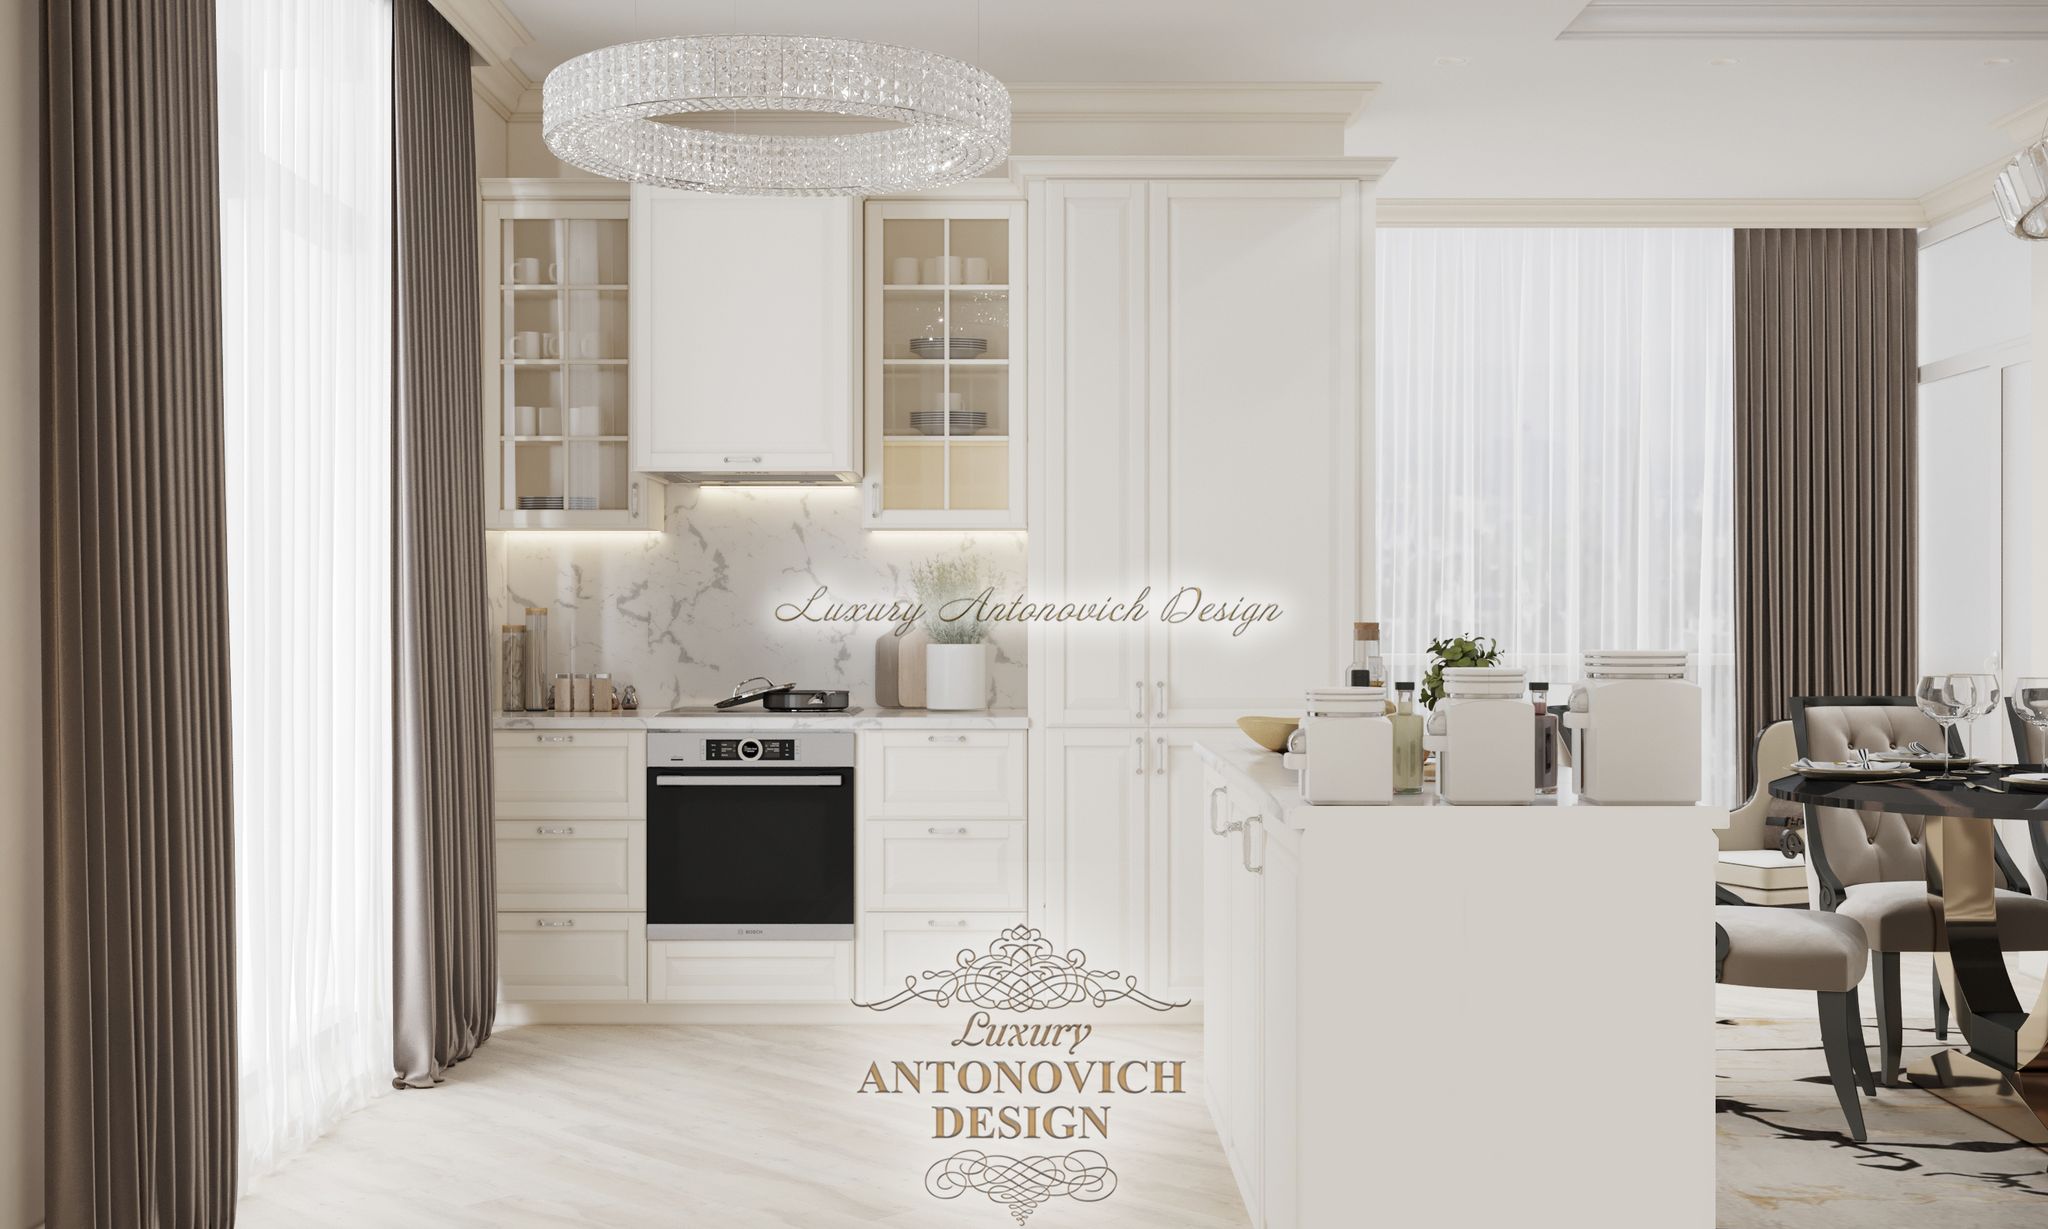 світла кухня, дизайн, дизайн фасаду кухні, біла кухня інтер'єр, антонович дизайн